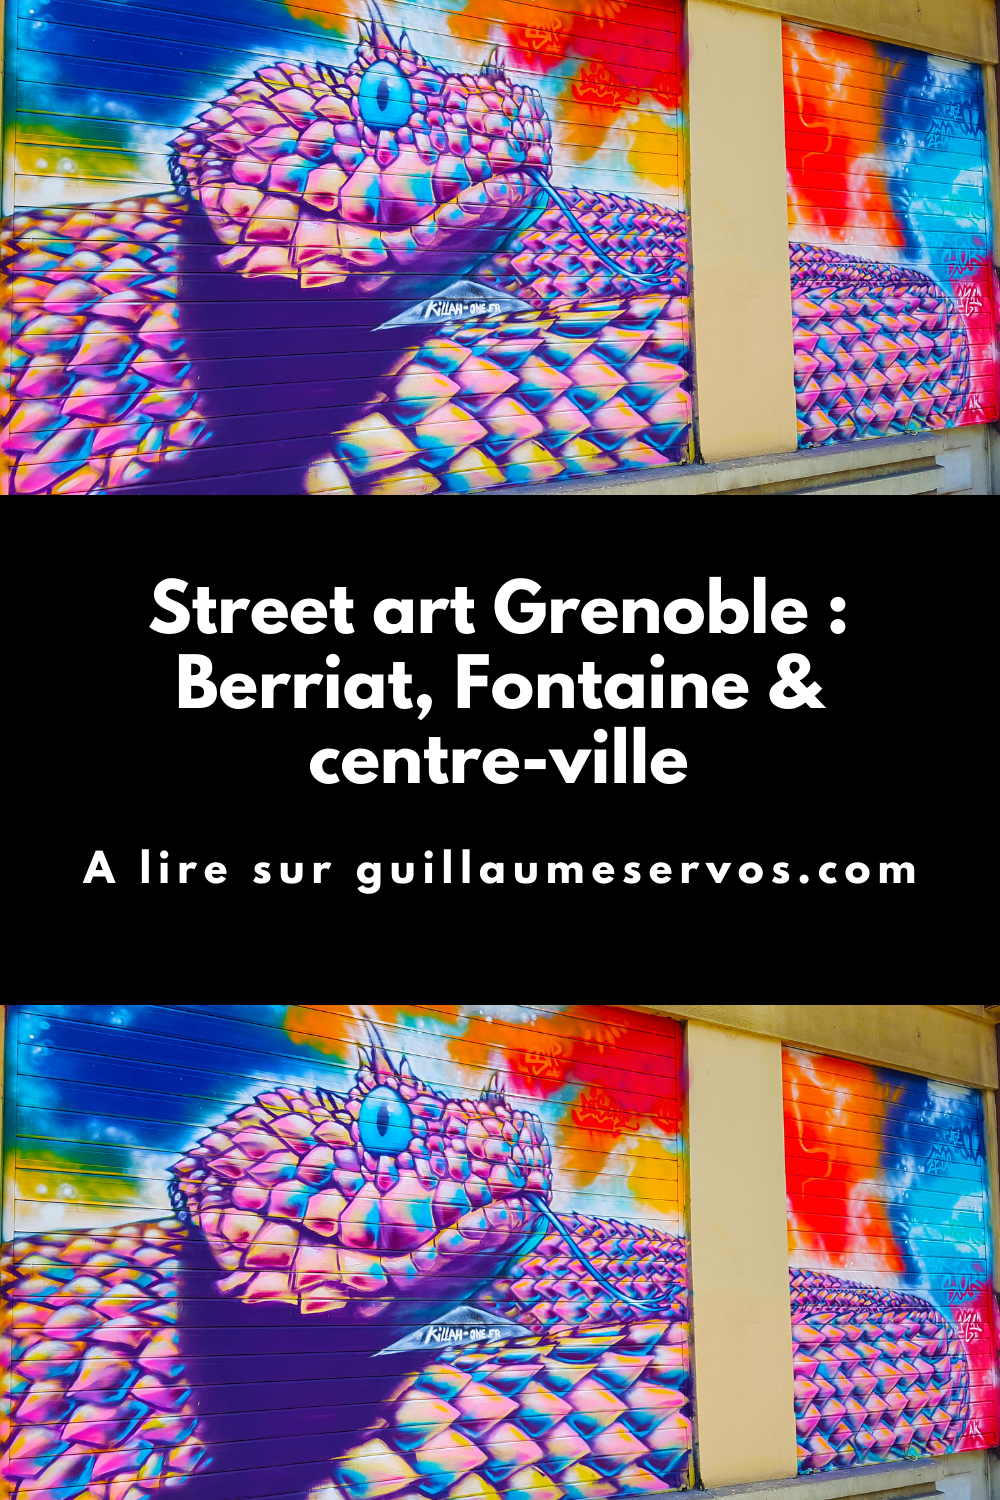 Street art Grenoble : Berriat, Fontaine & centre-ville
